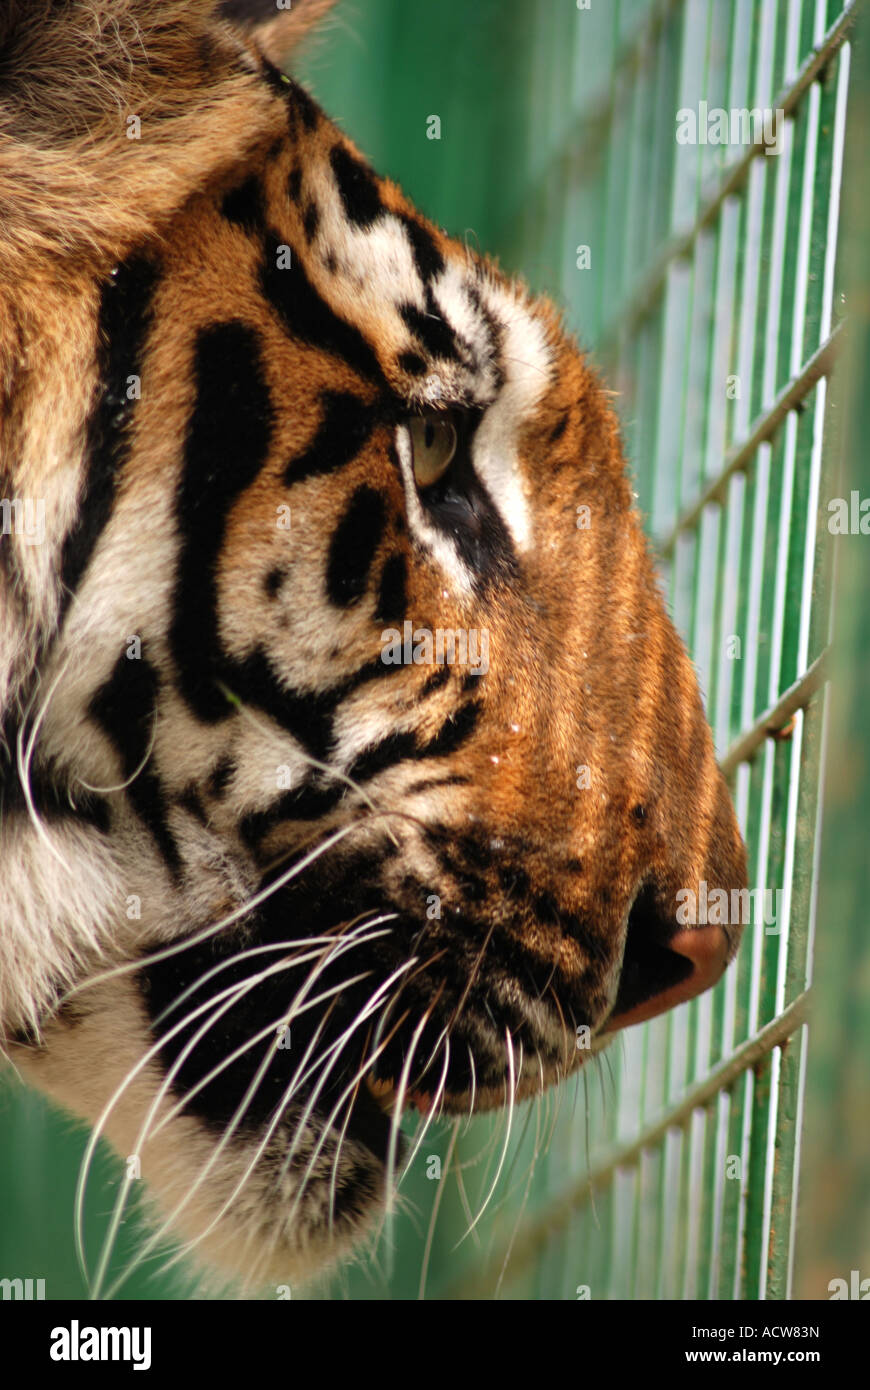 Una visión desde dentro, uniendo el tigre de Sumatra Foto de stock